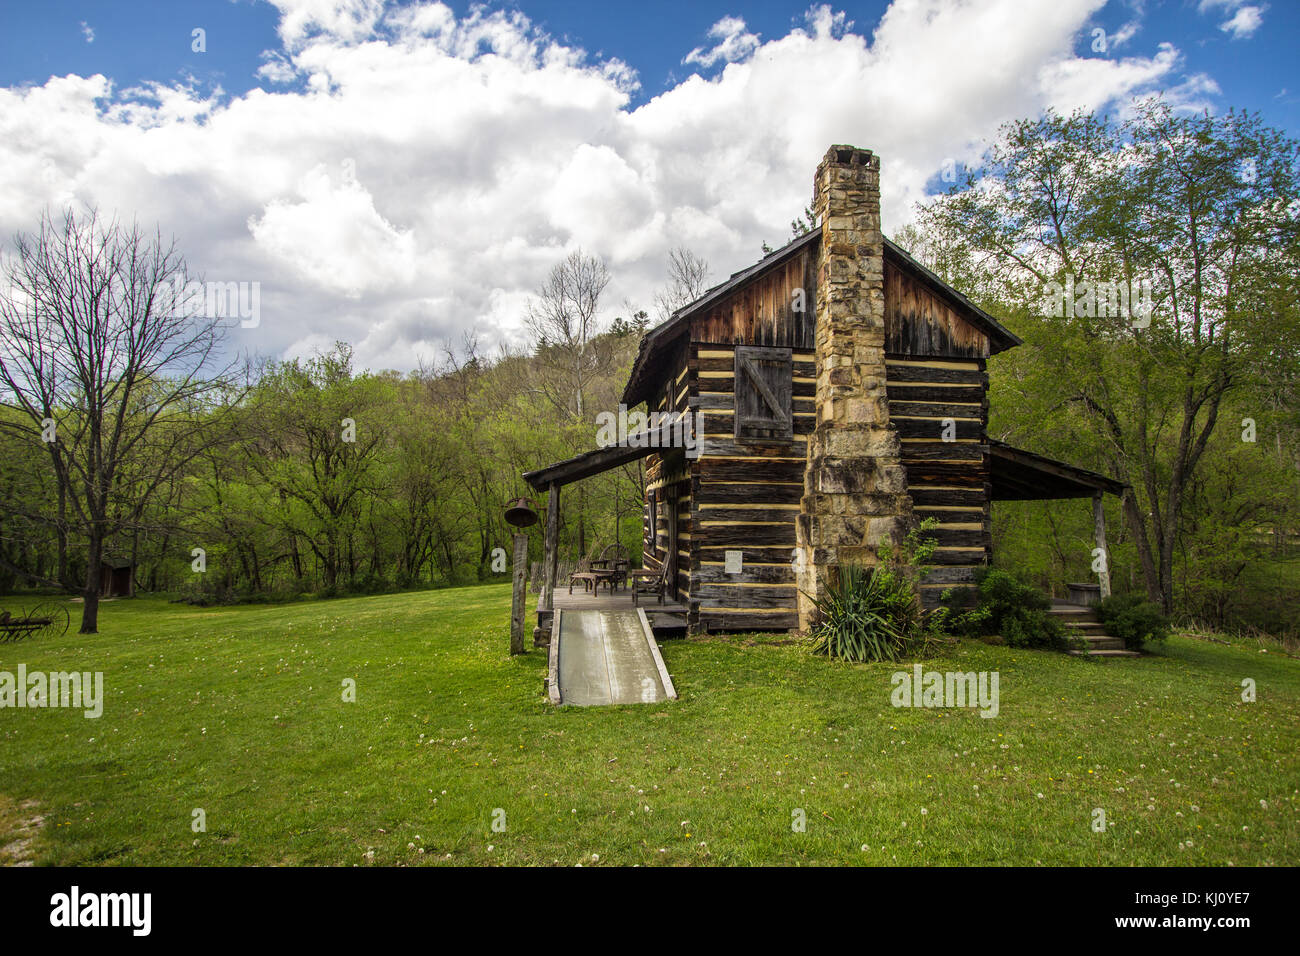 Registro storico di cabina su display al Gladie Centro Visitatori del Daniel Boone National Forest. Si tratta di un pubblico edificio di proprietà sul pubblico Parklands. Foto Stock